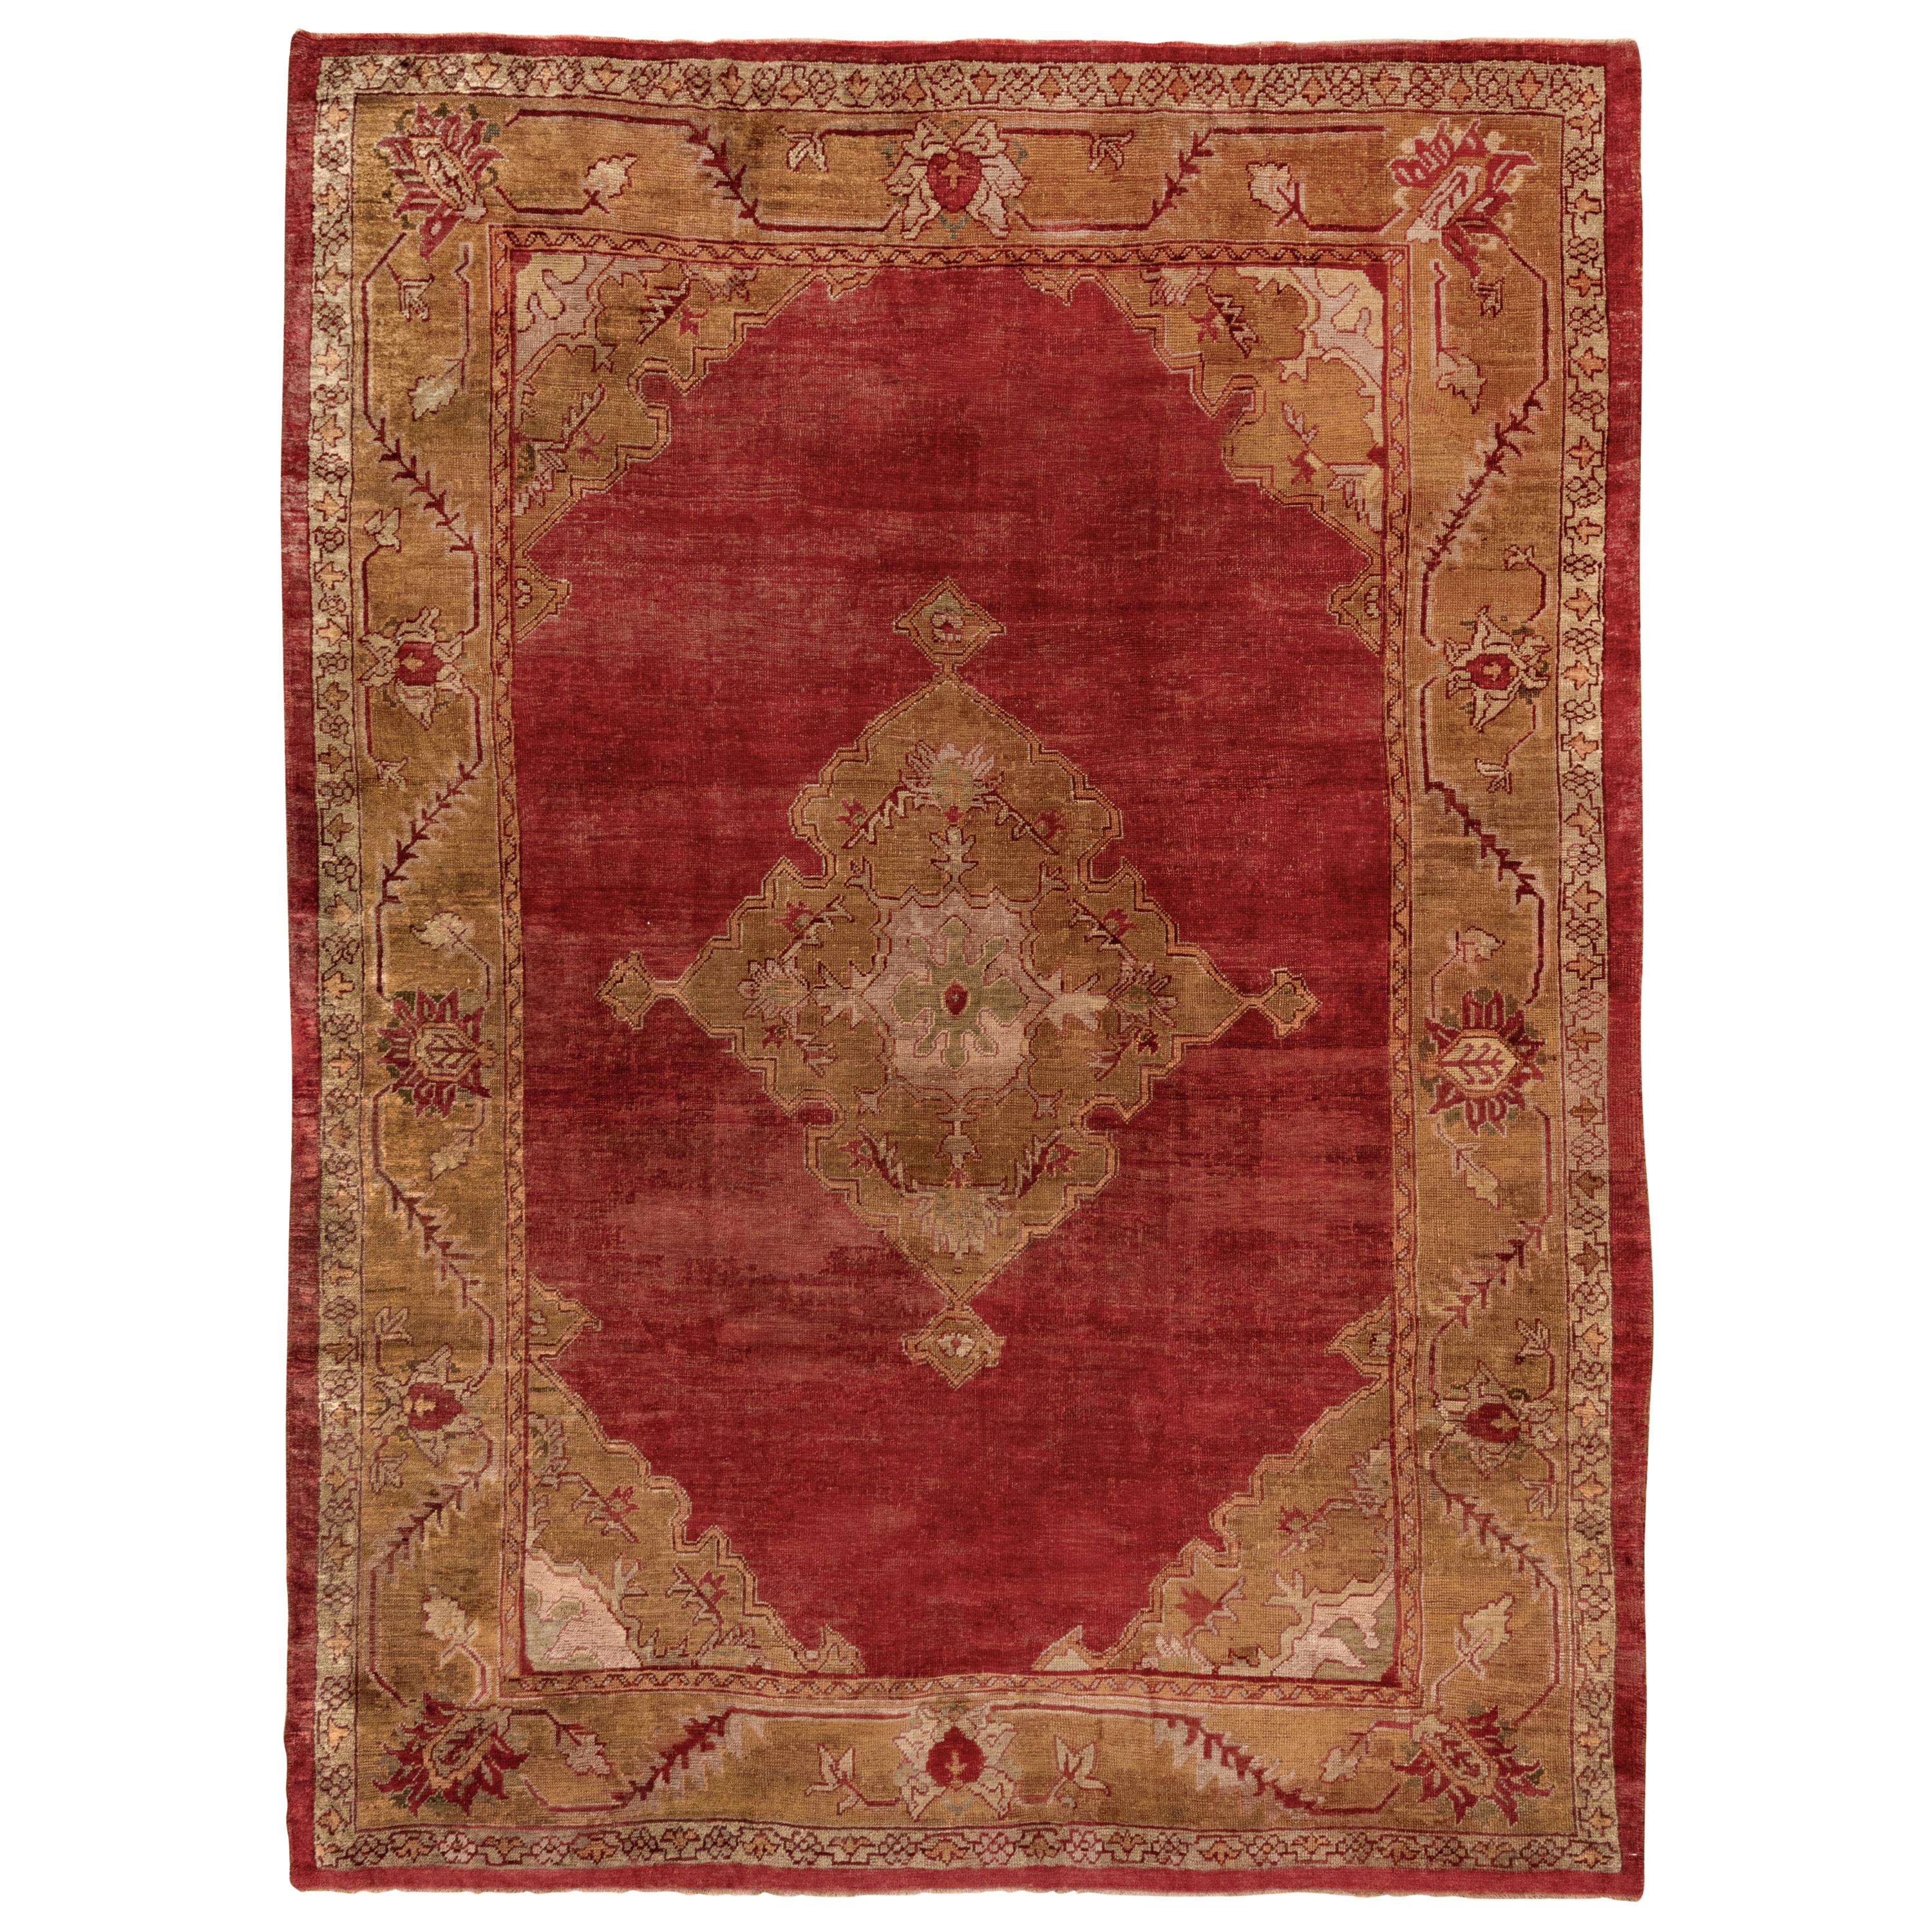 Antiker türkischer Oushak-Teppich, rotes Feld und goldene Bordüren, Medaillon in der Mitte